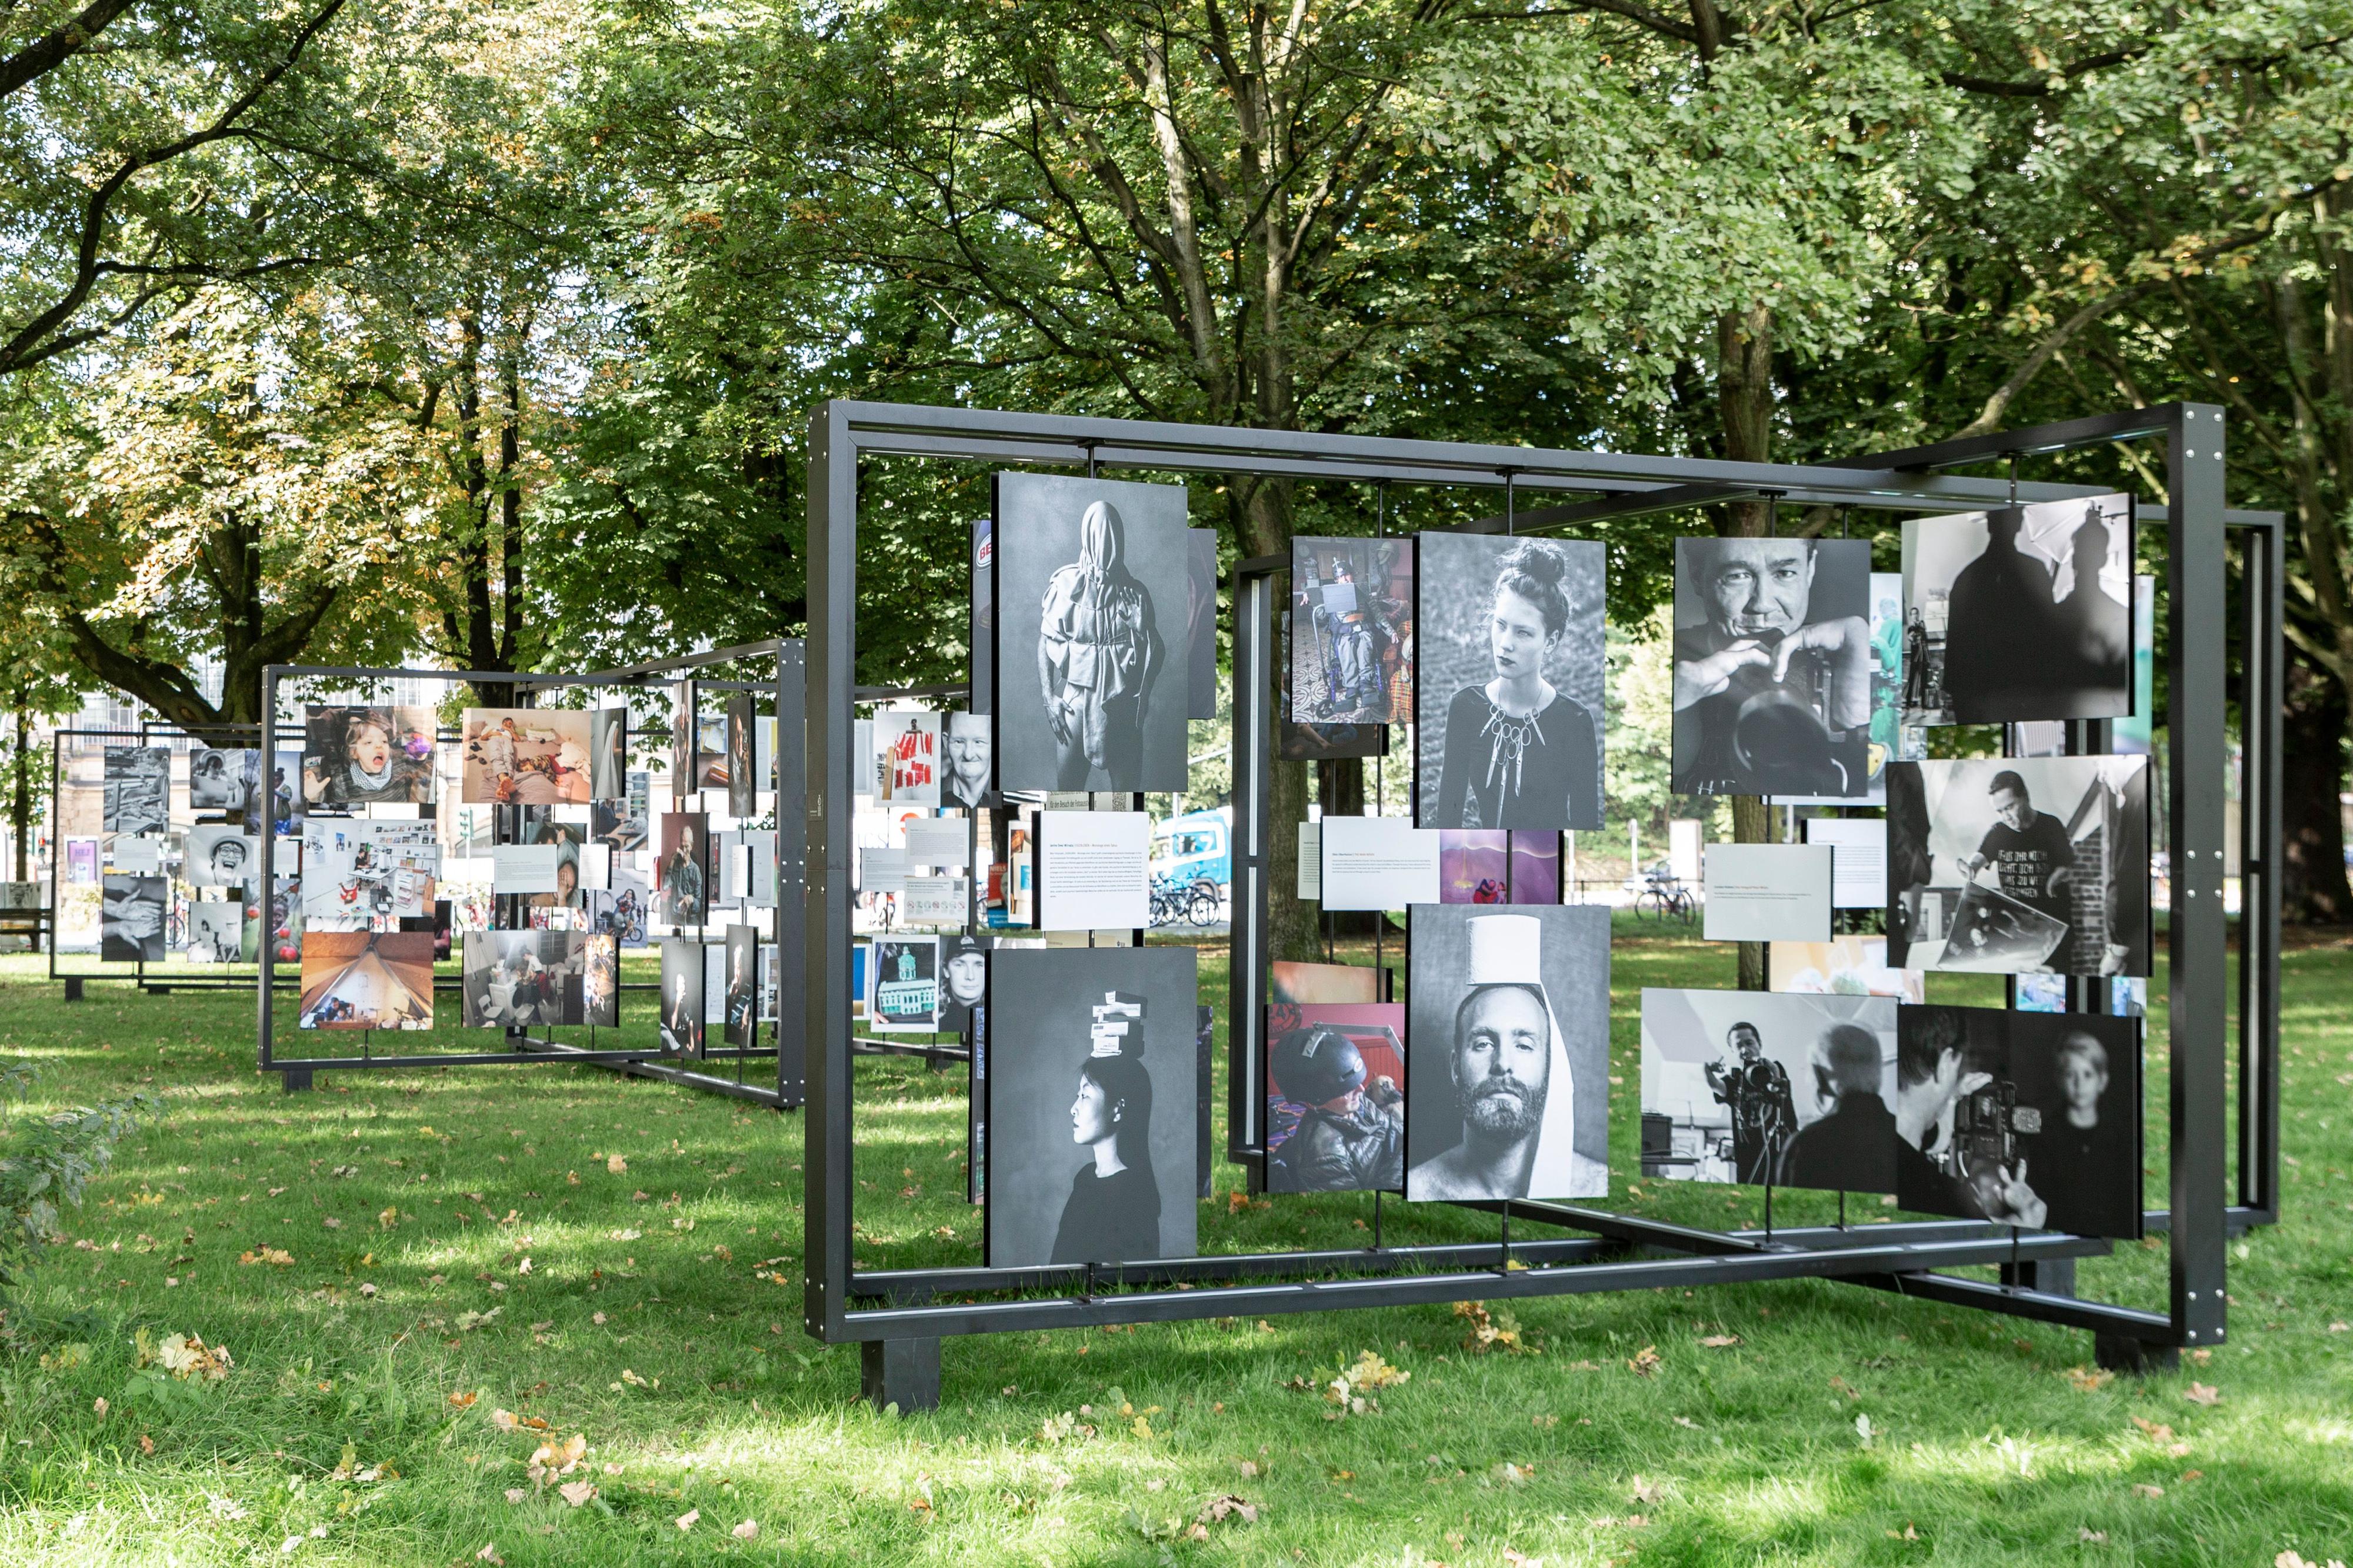 Fotowettbewerb: Ausstellung auf der Moorweide in Hamburg